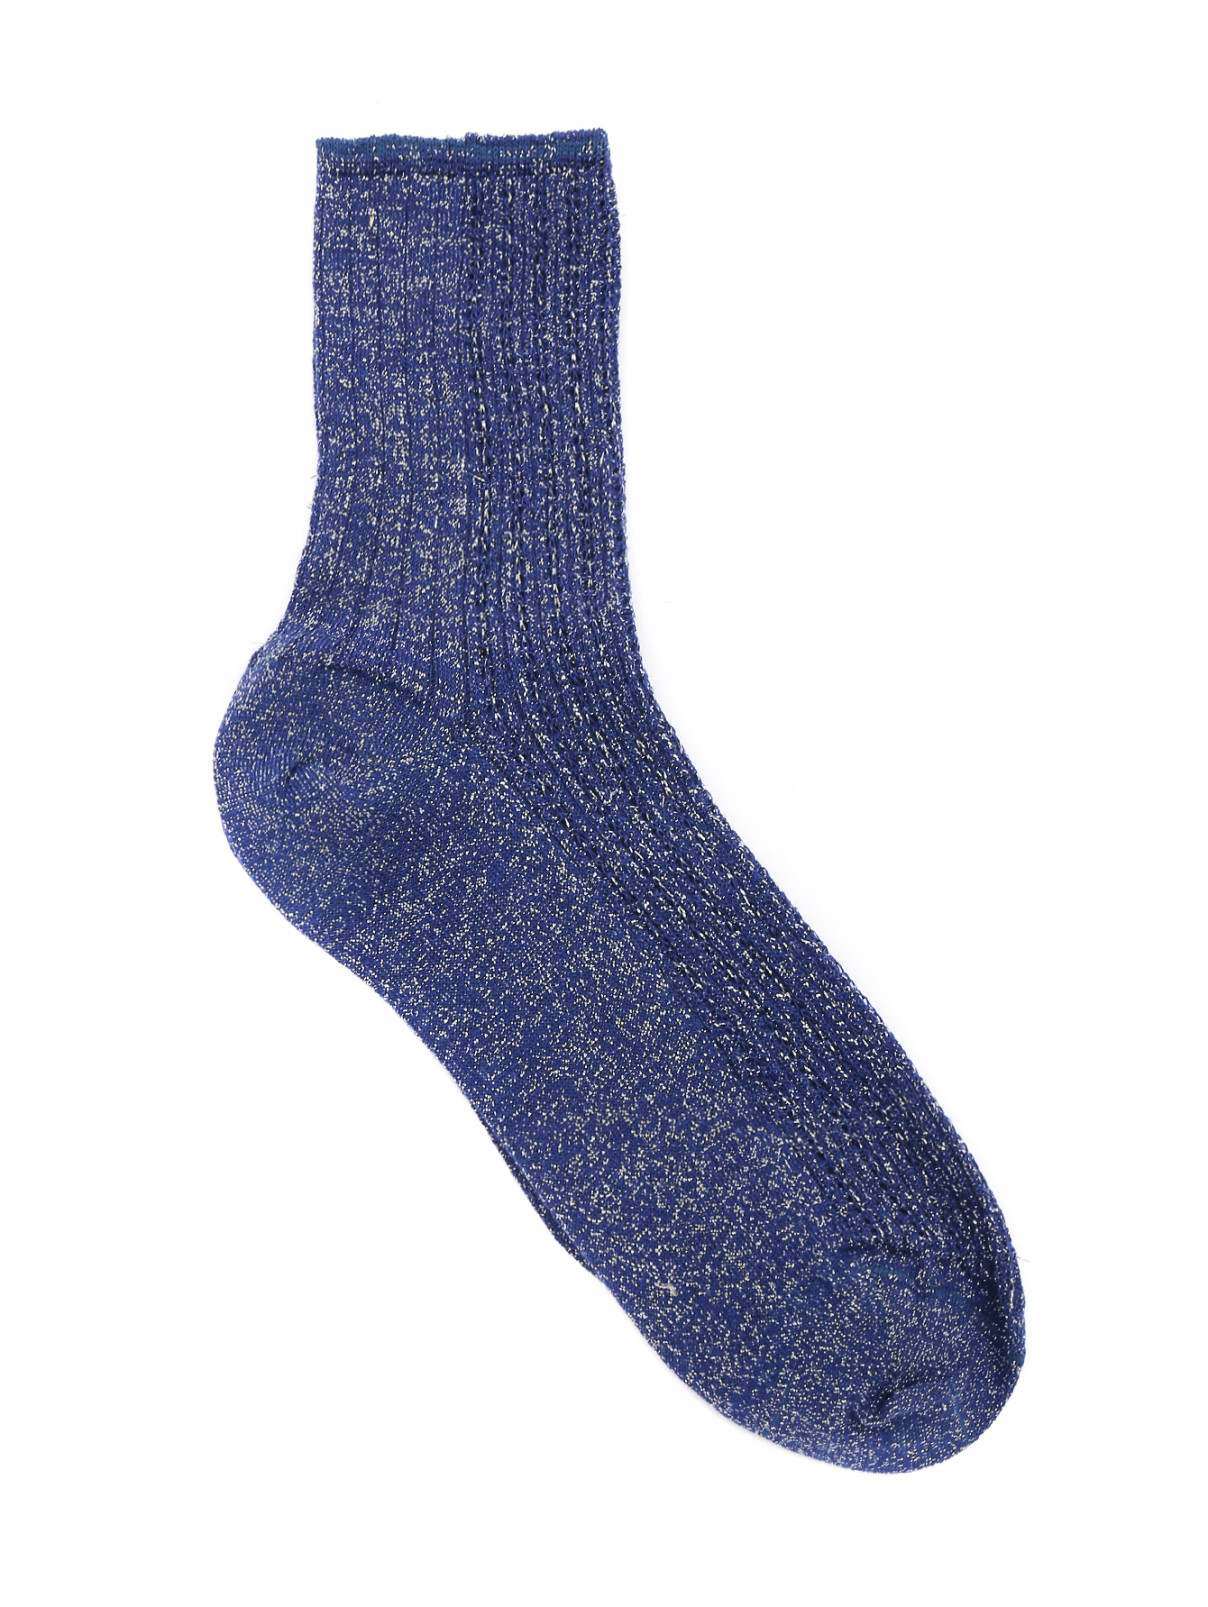 Носки из хлопка ALTO MILANO  –  Общий вид  – Цвет:  Синий